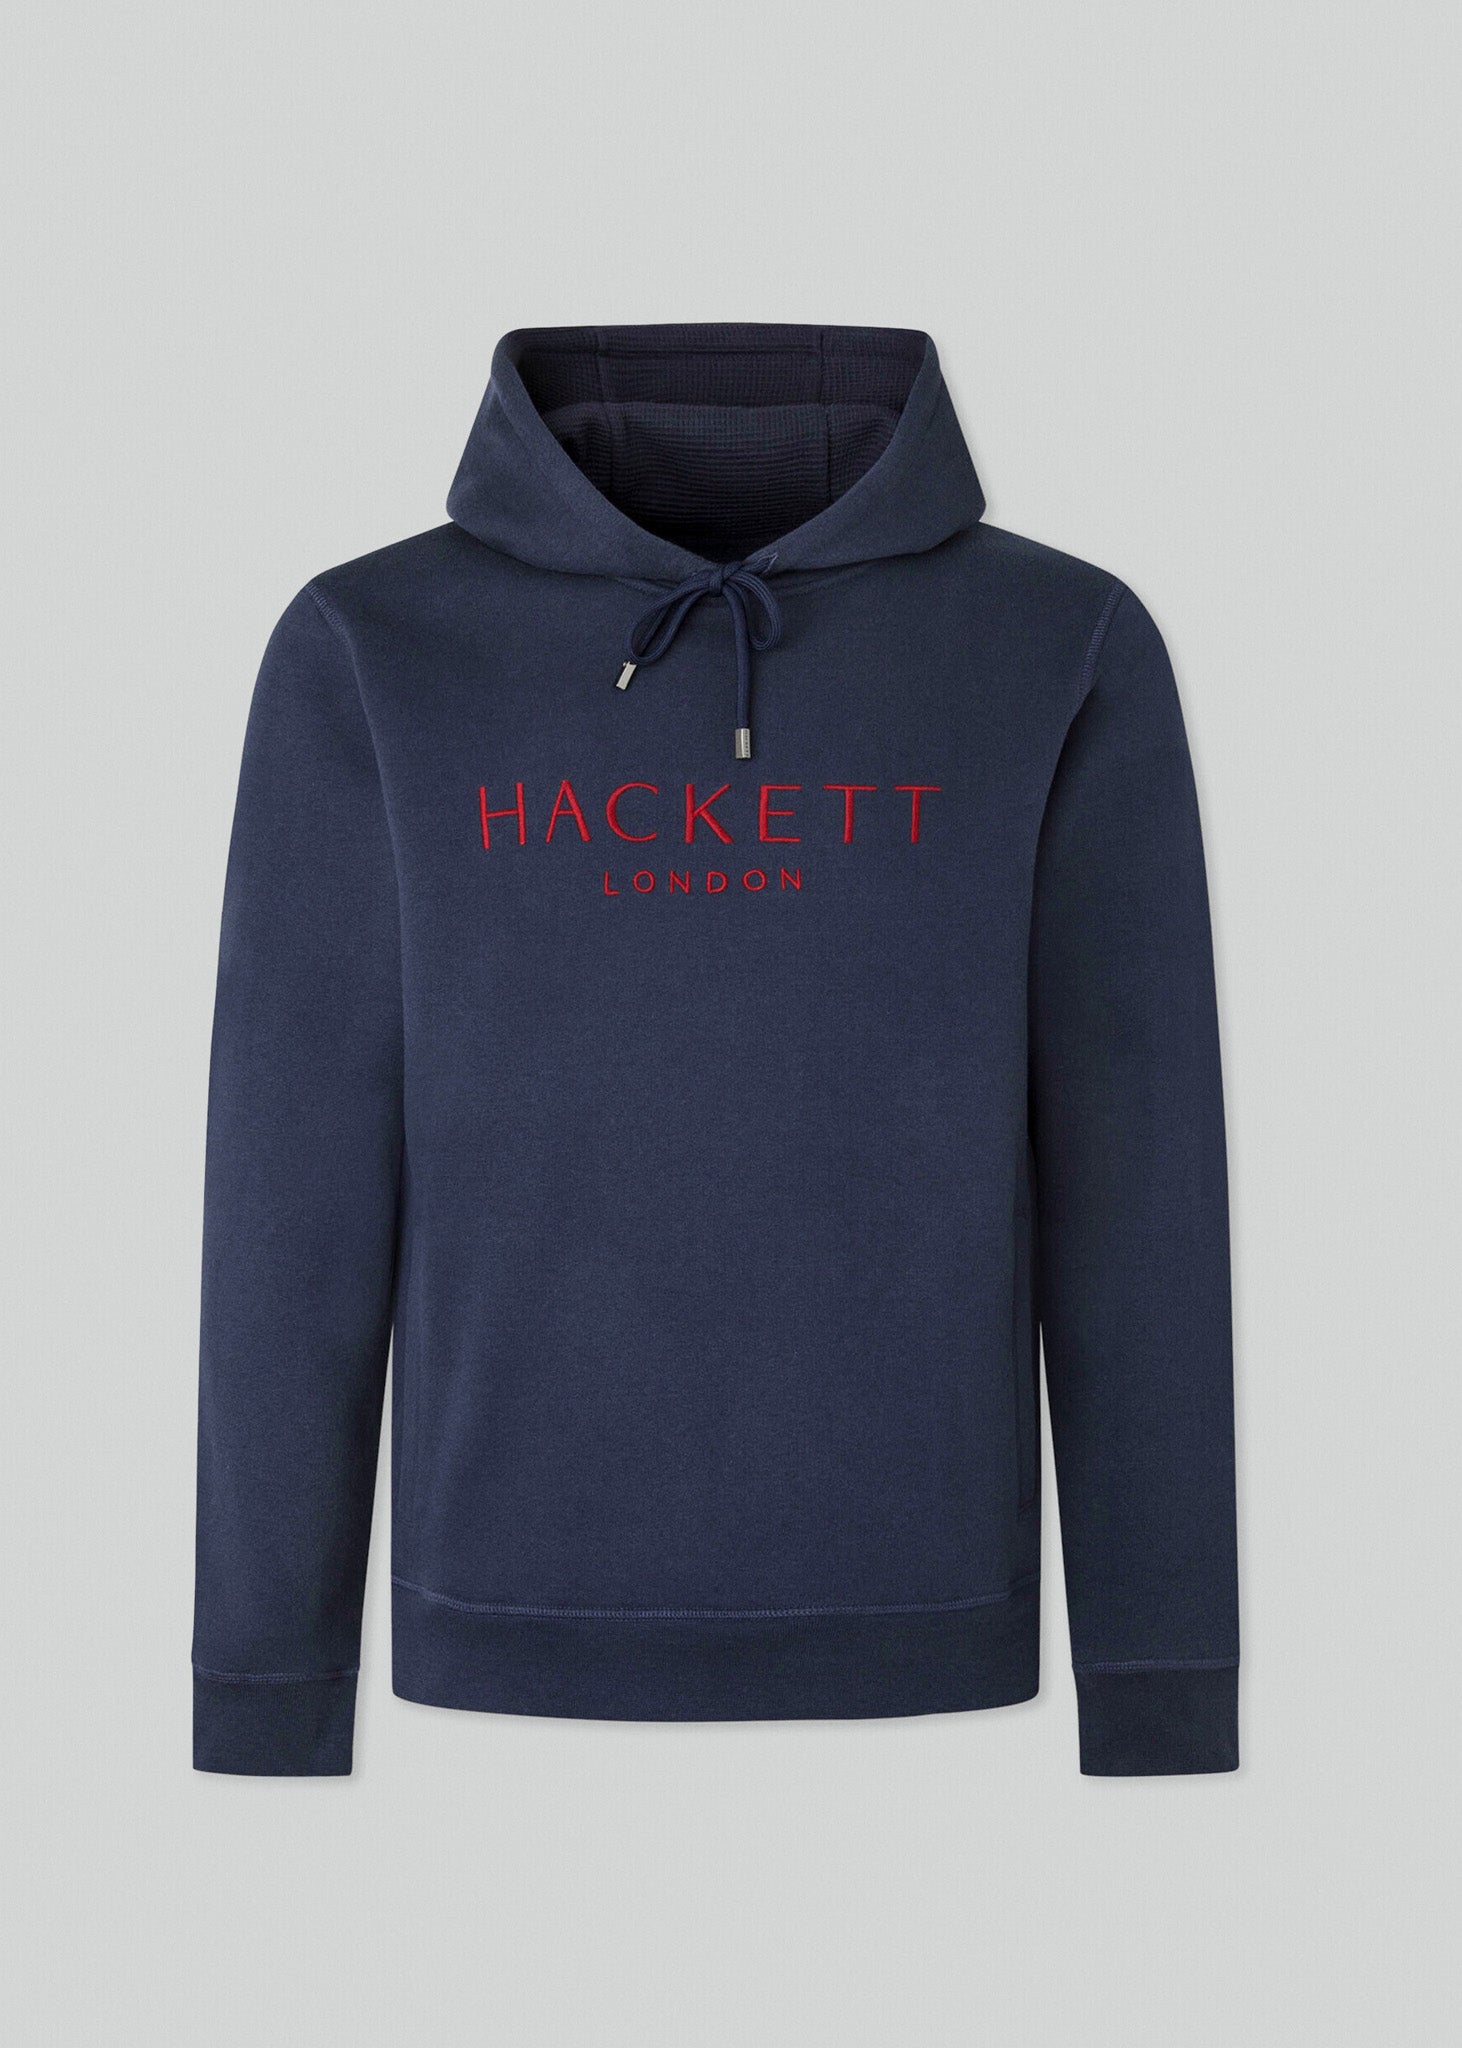 Hackett London Hoodies  Heritage hoody - navy 